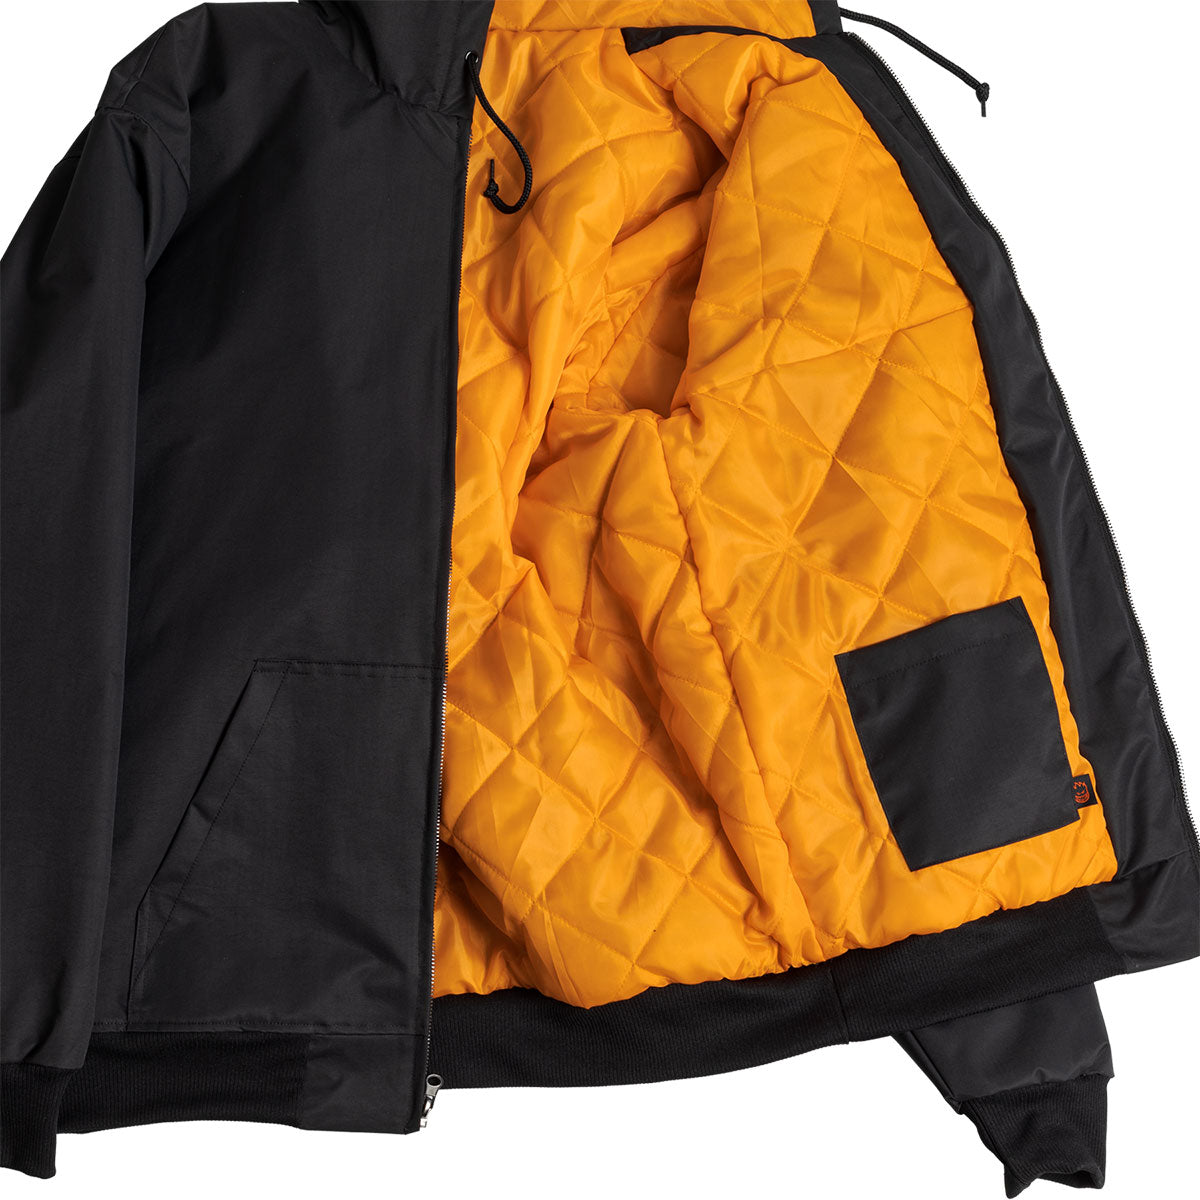 Spitfire Og Classic Nylon Jacket - Black/Orange image 3